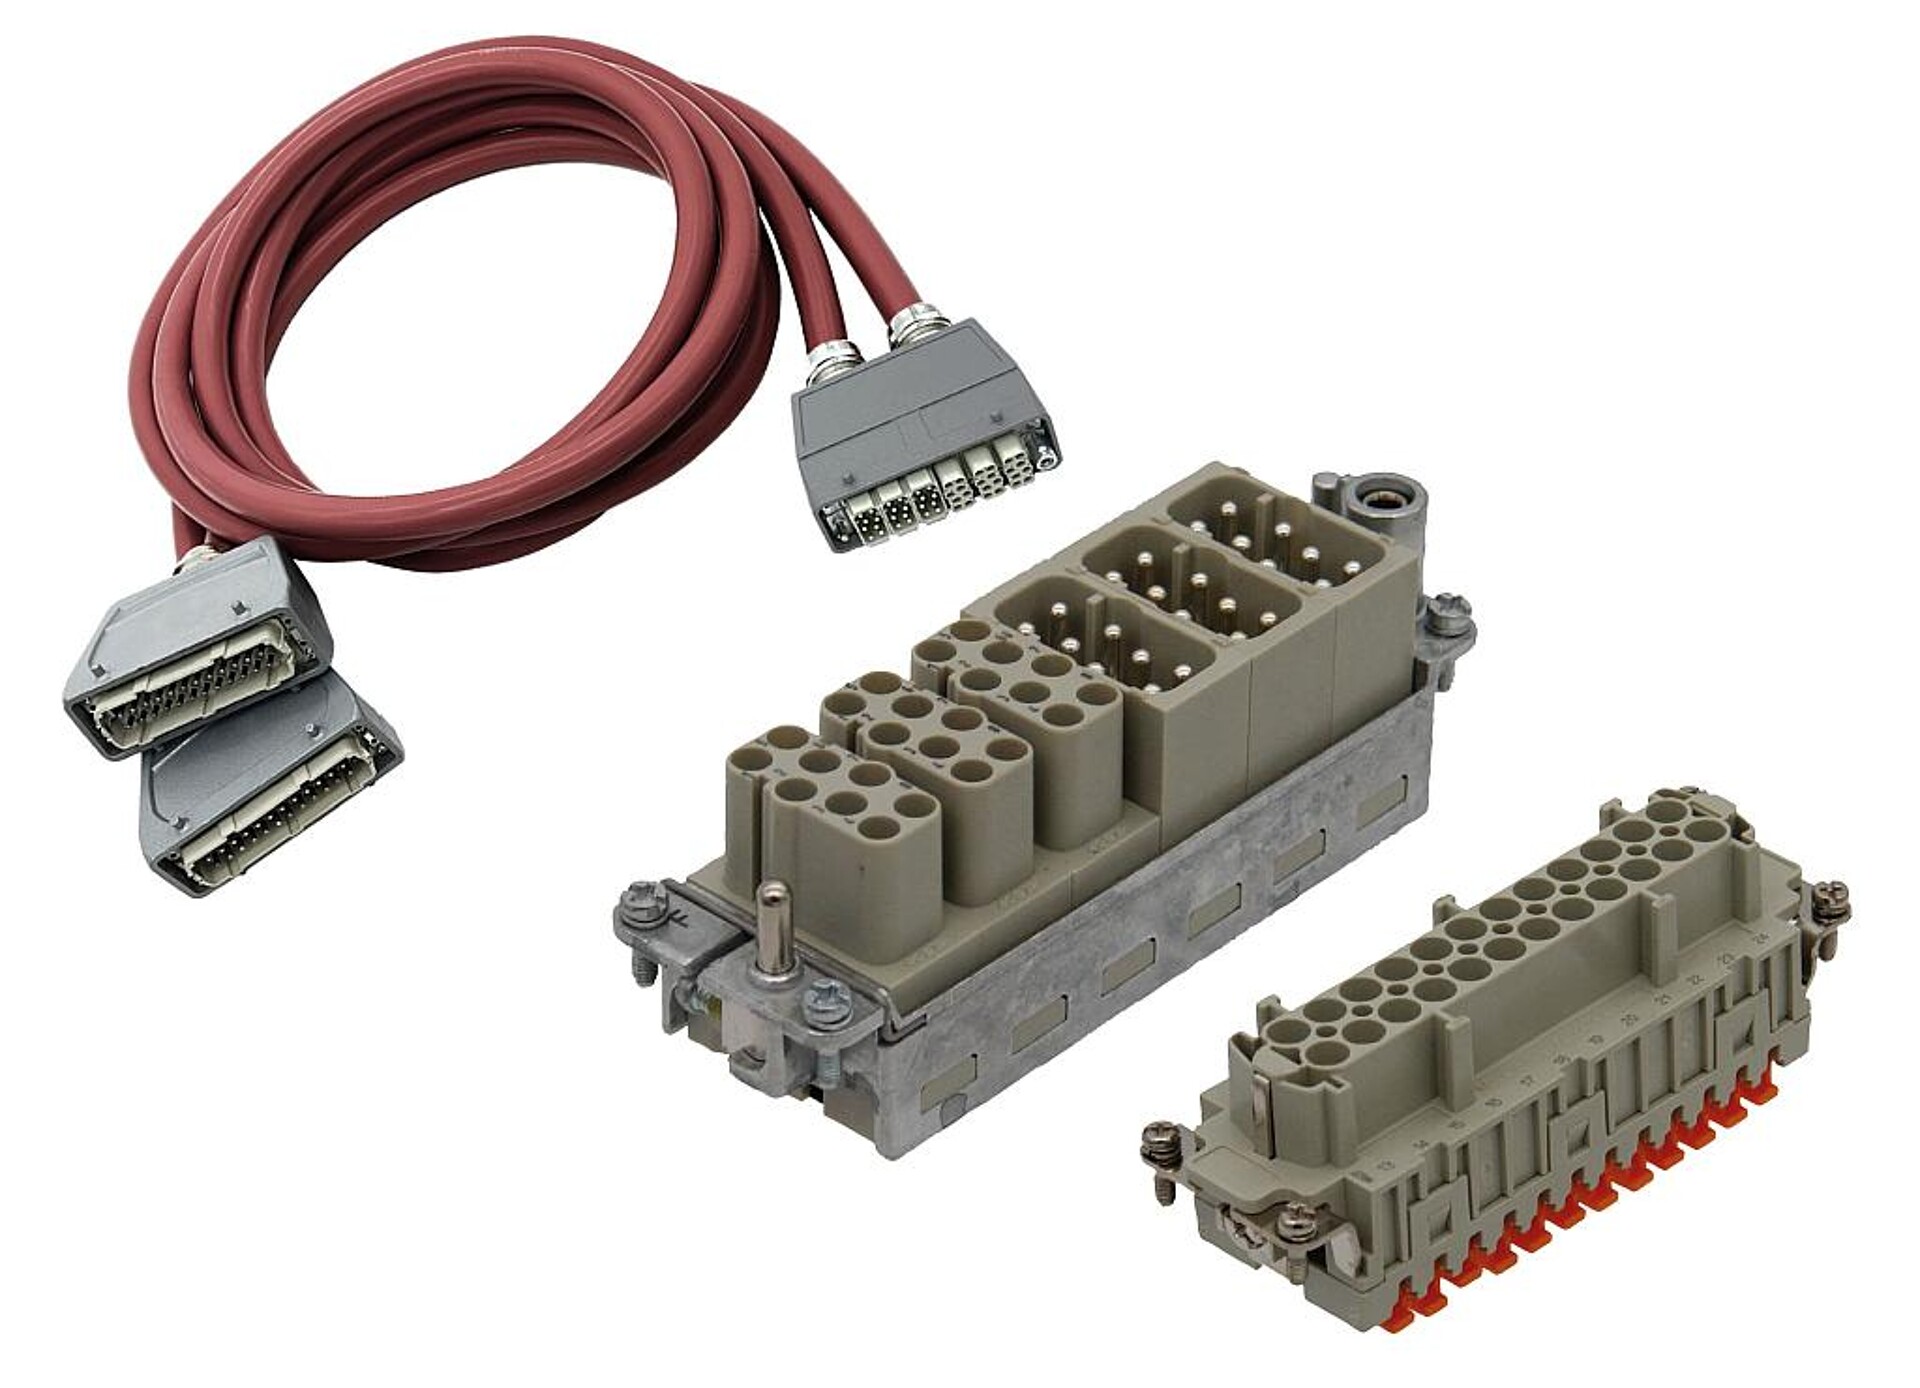 Neue Kabel- und Steckervarianten sollen industrielle Anwendungen effizienter und platzsparender machen. (Foto: Hasco)